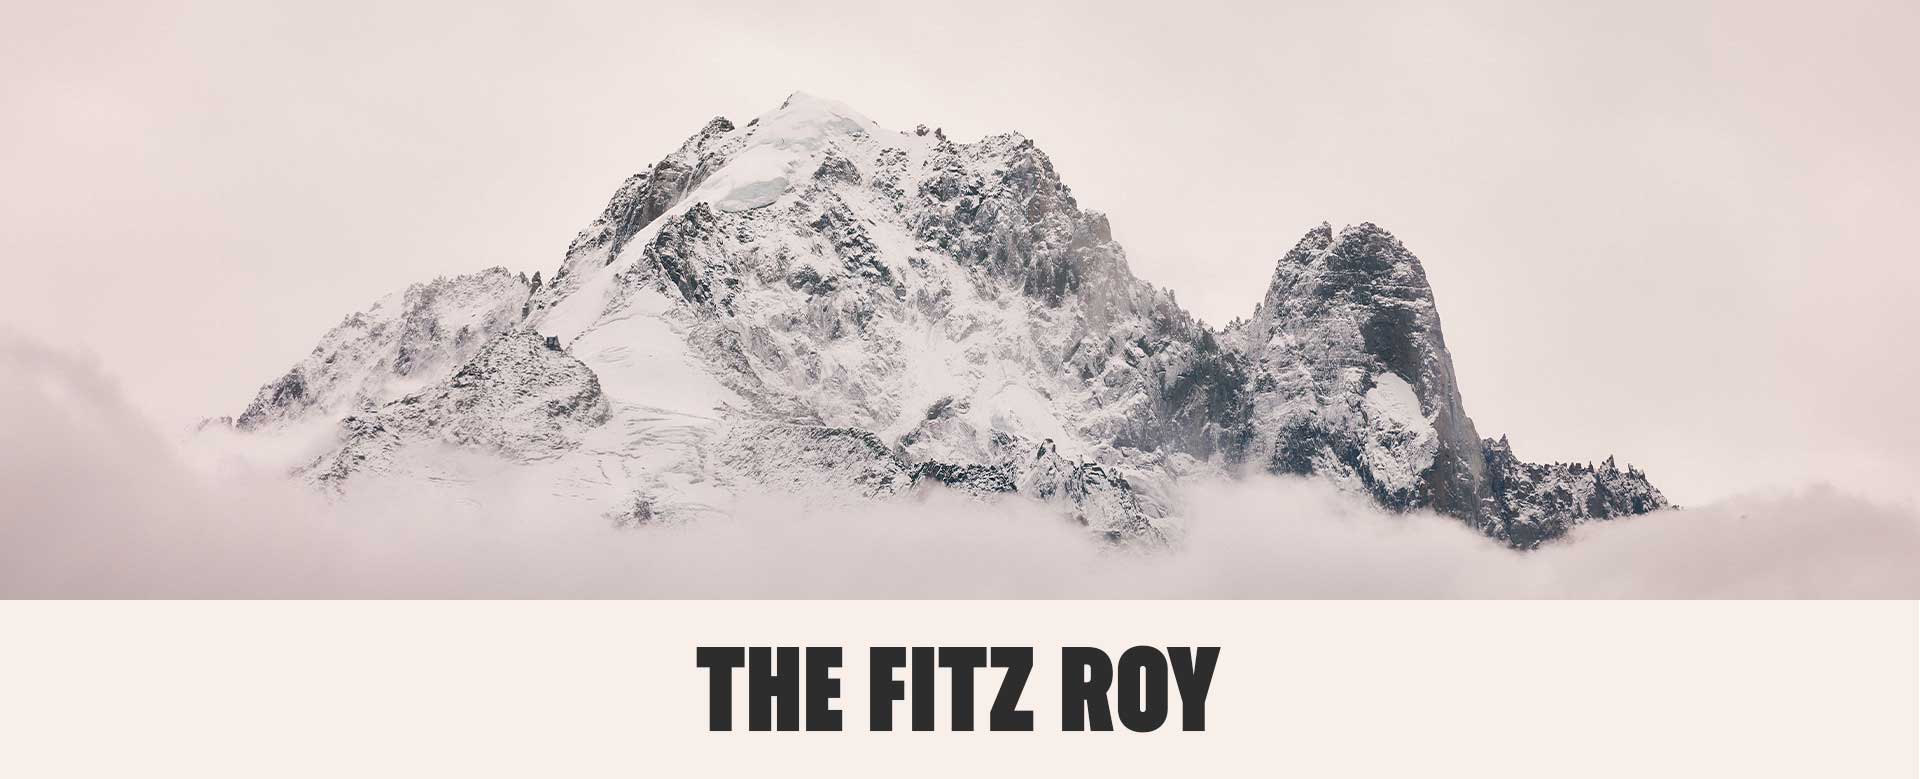 Mount FITZ ROY